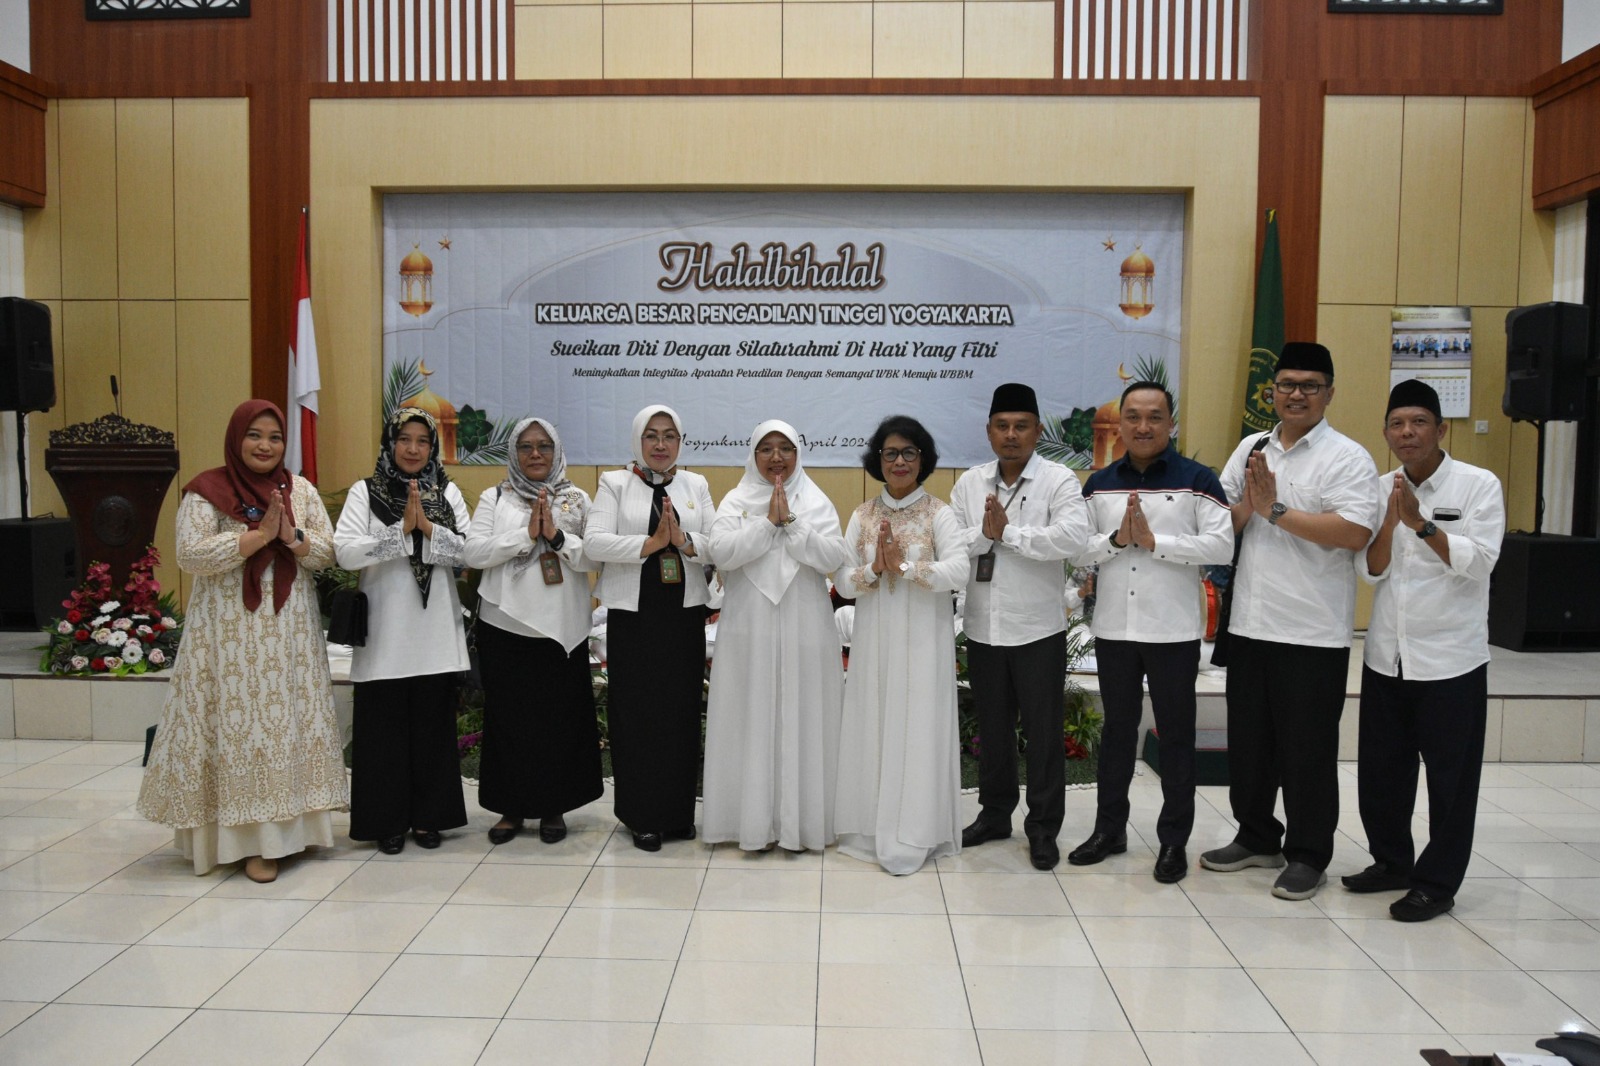 Pengadilan Negeri Yogyakarta Menghadiri Syawalan Keluarga Besar Pengadilan Tinggi Yogyakarta